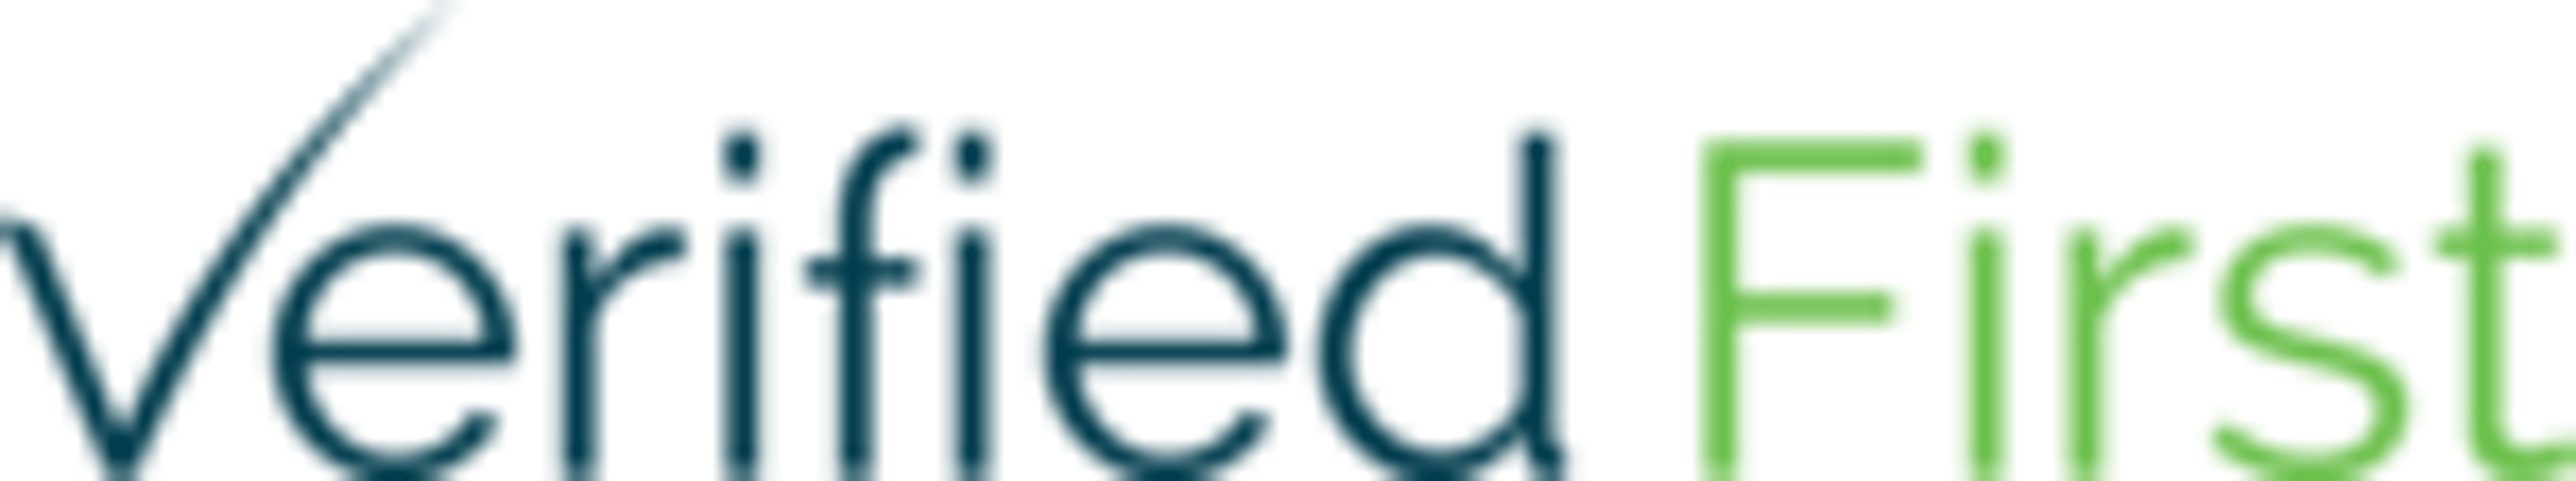 Verified First Logo